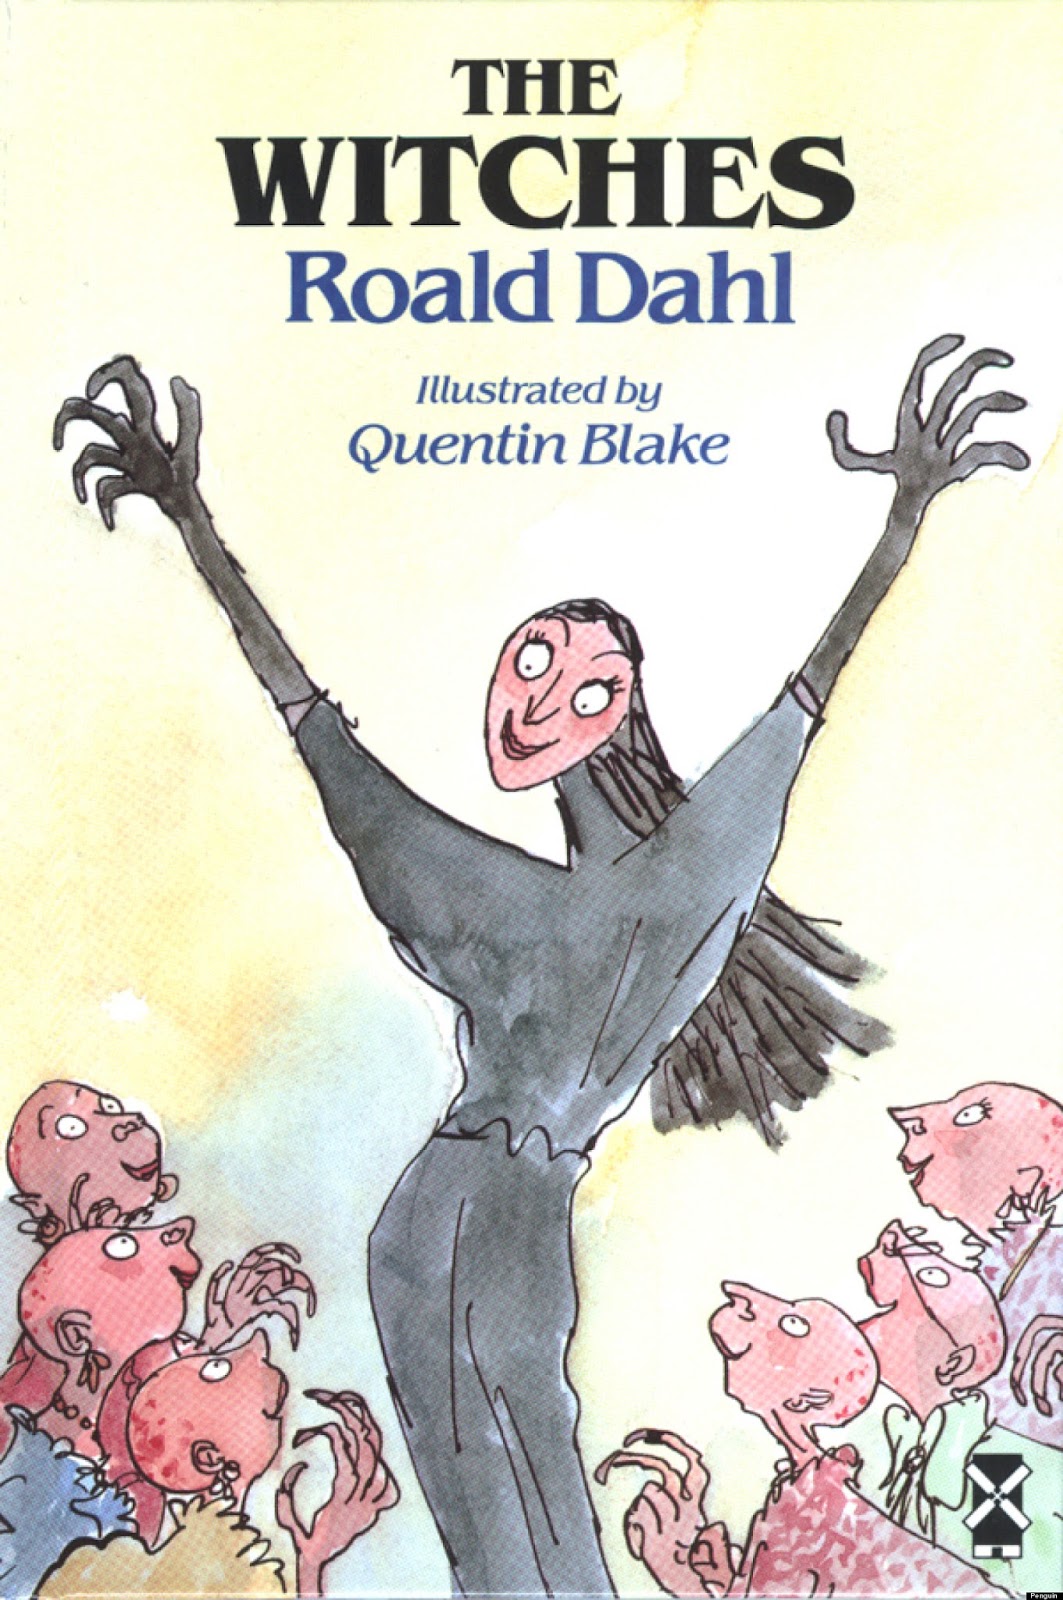 Sistema Critico - Le streghe di Roald Dahl non fanno paura